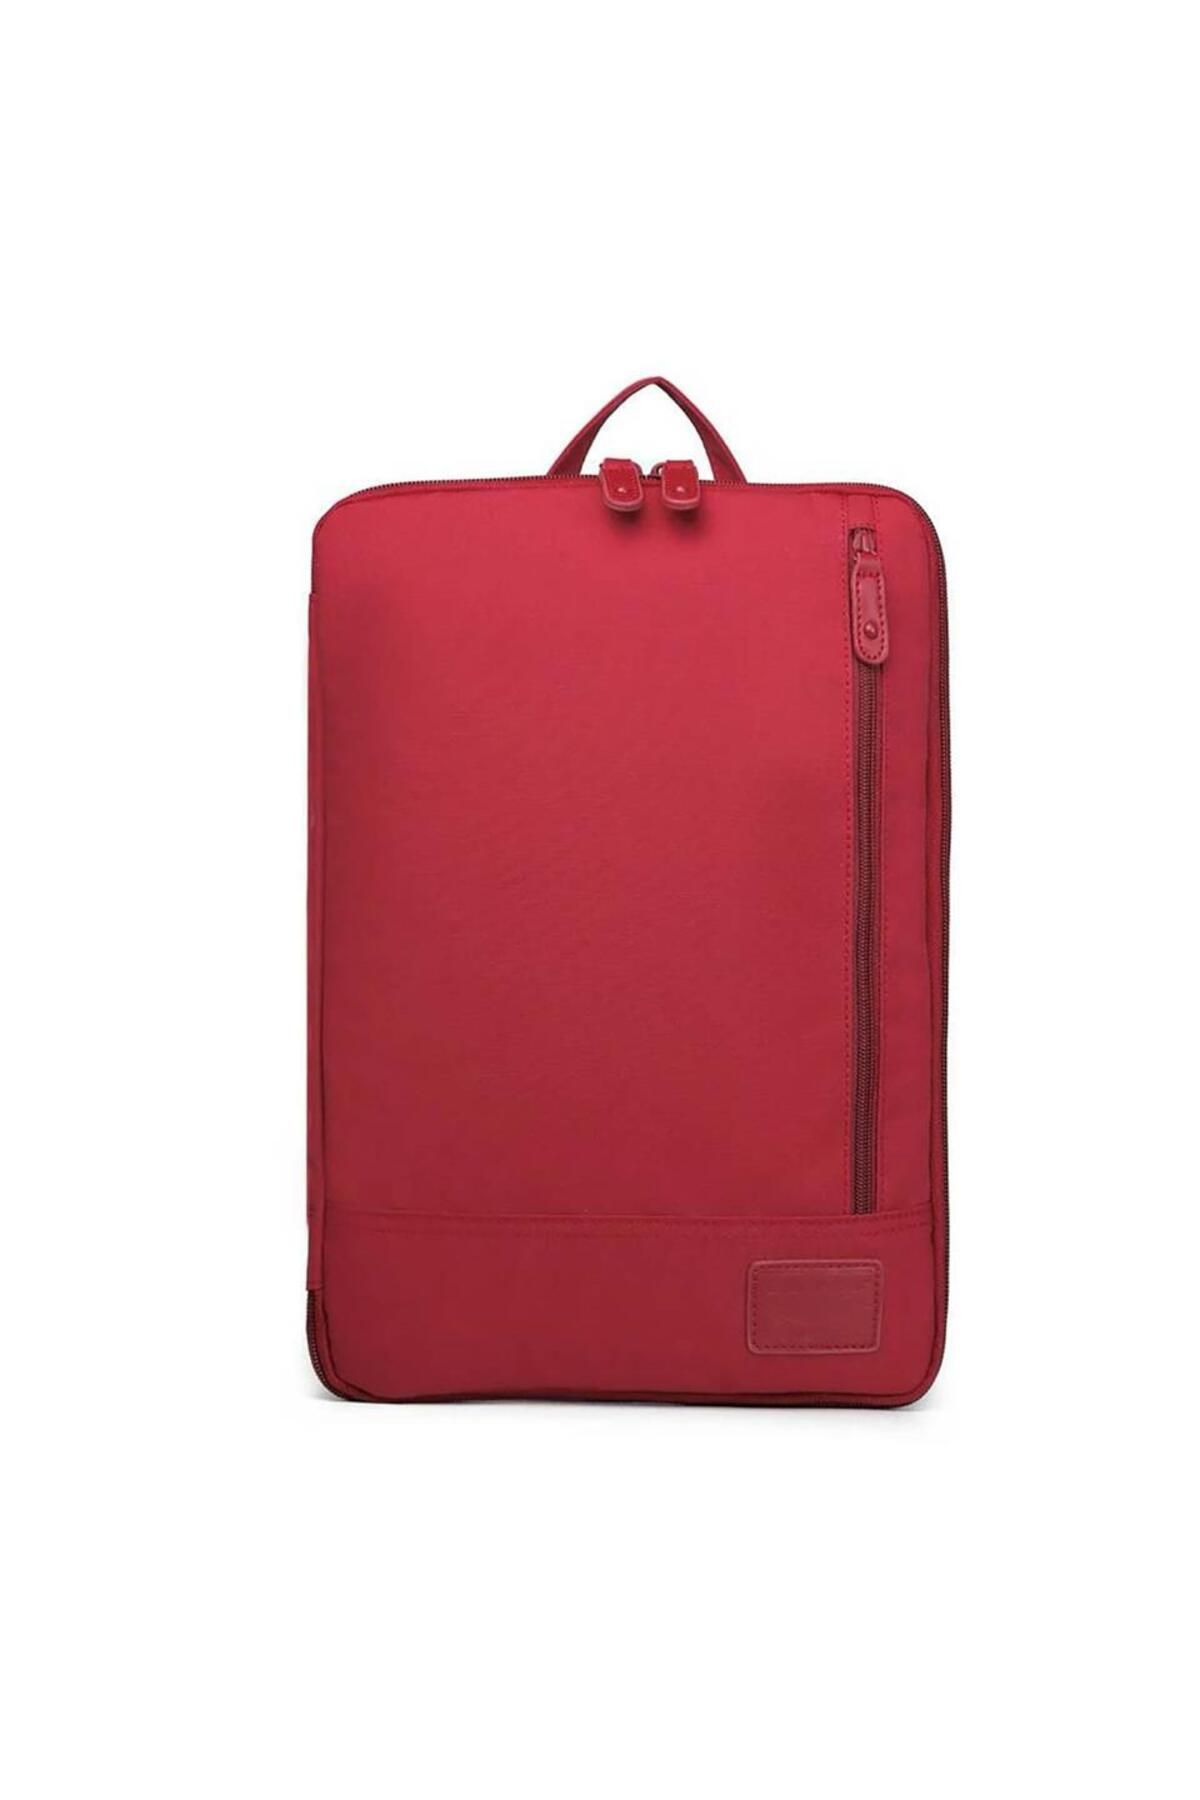 Smart Bags 3191 Laptop & Evrak Çantası Vişne